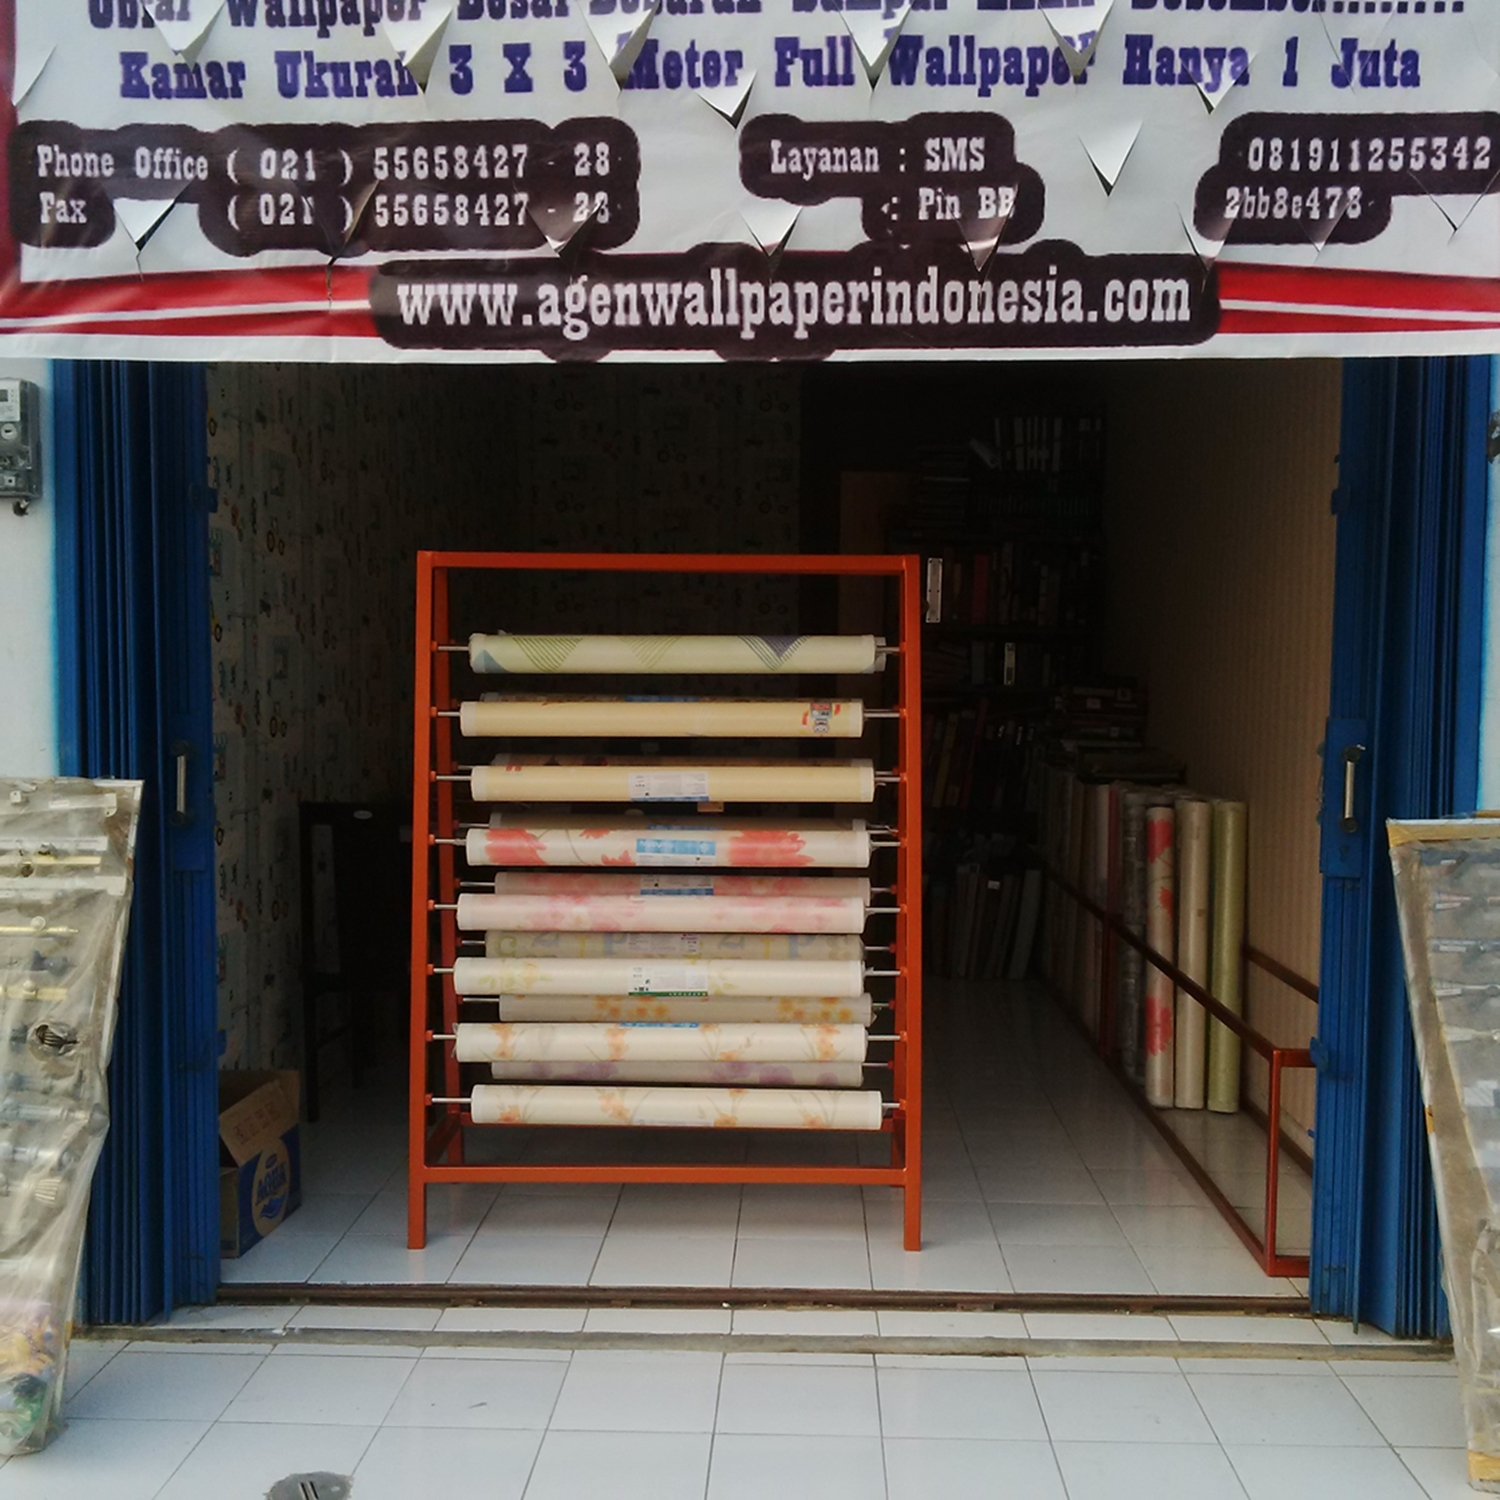 Wallpaper Dinding Rumah Murah Online - Harga Wallpaper Dinding Murah Di Tangerang - HD Wallpaper 